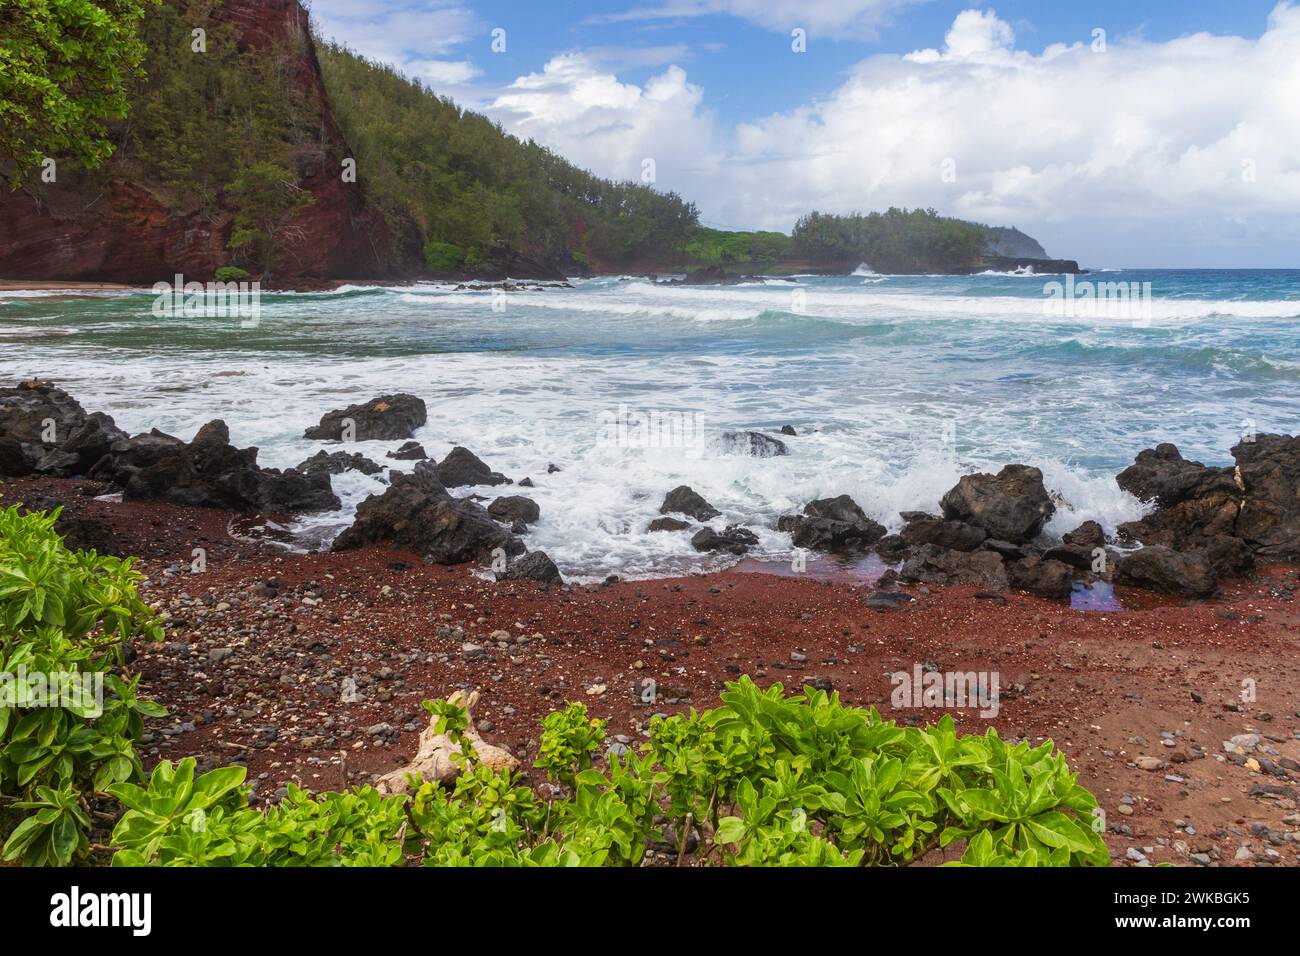 Kaihalulu rosso spiaggia di sabbia vicino al villaggio di Hana sulla famosa strada di Hana sull'isola di Maui nelle Hawaii. Foto Stock